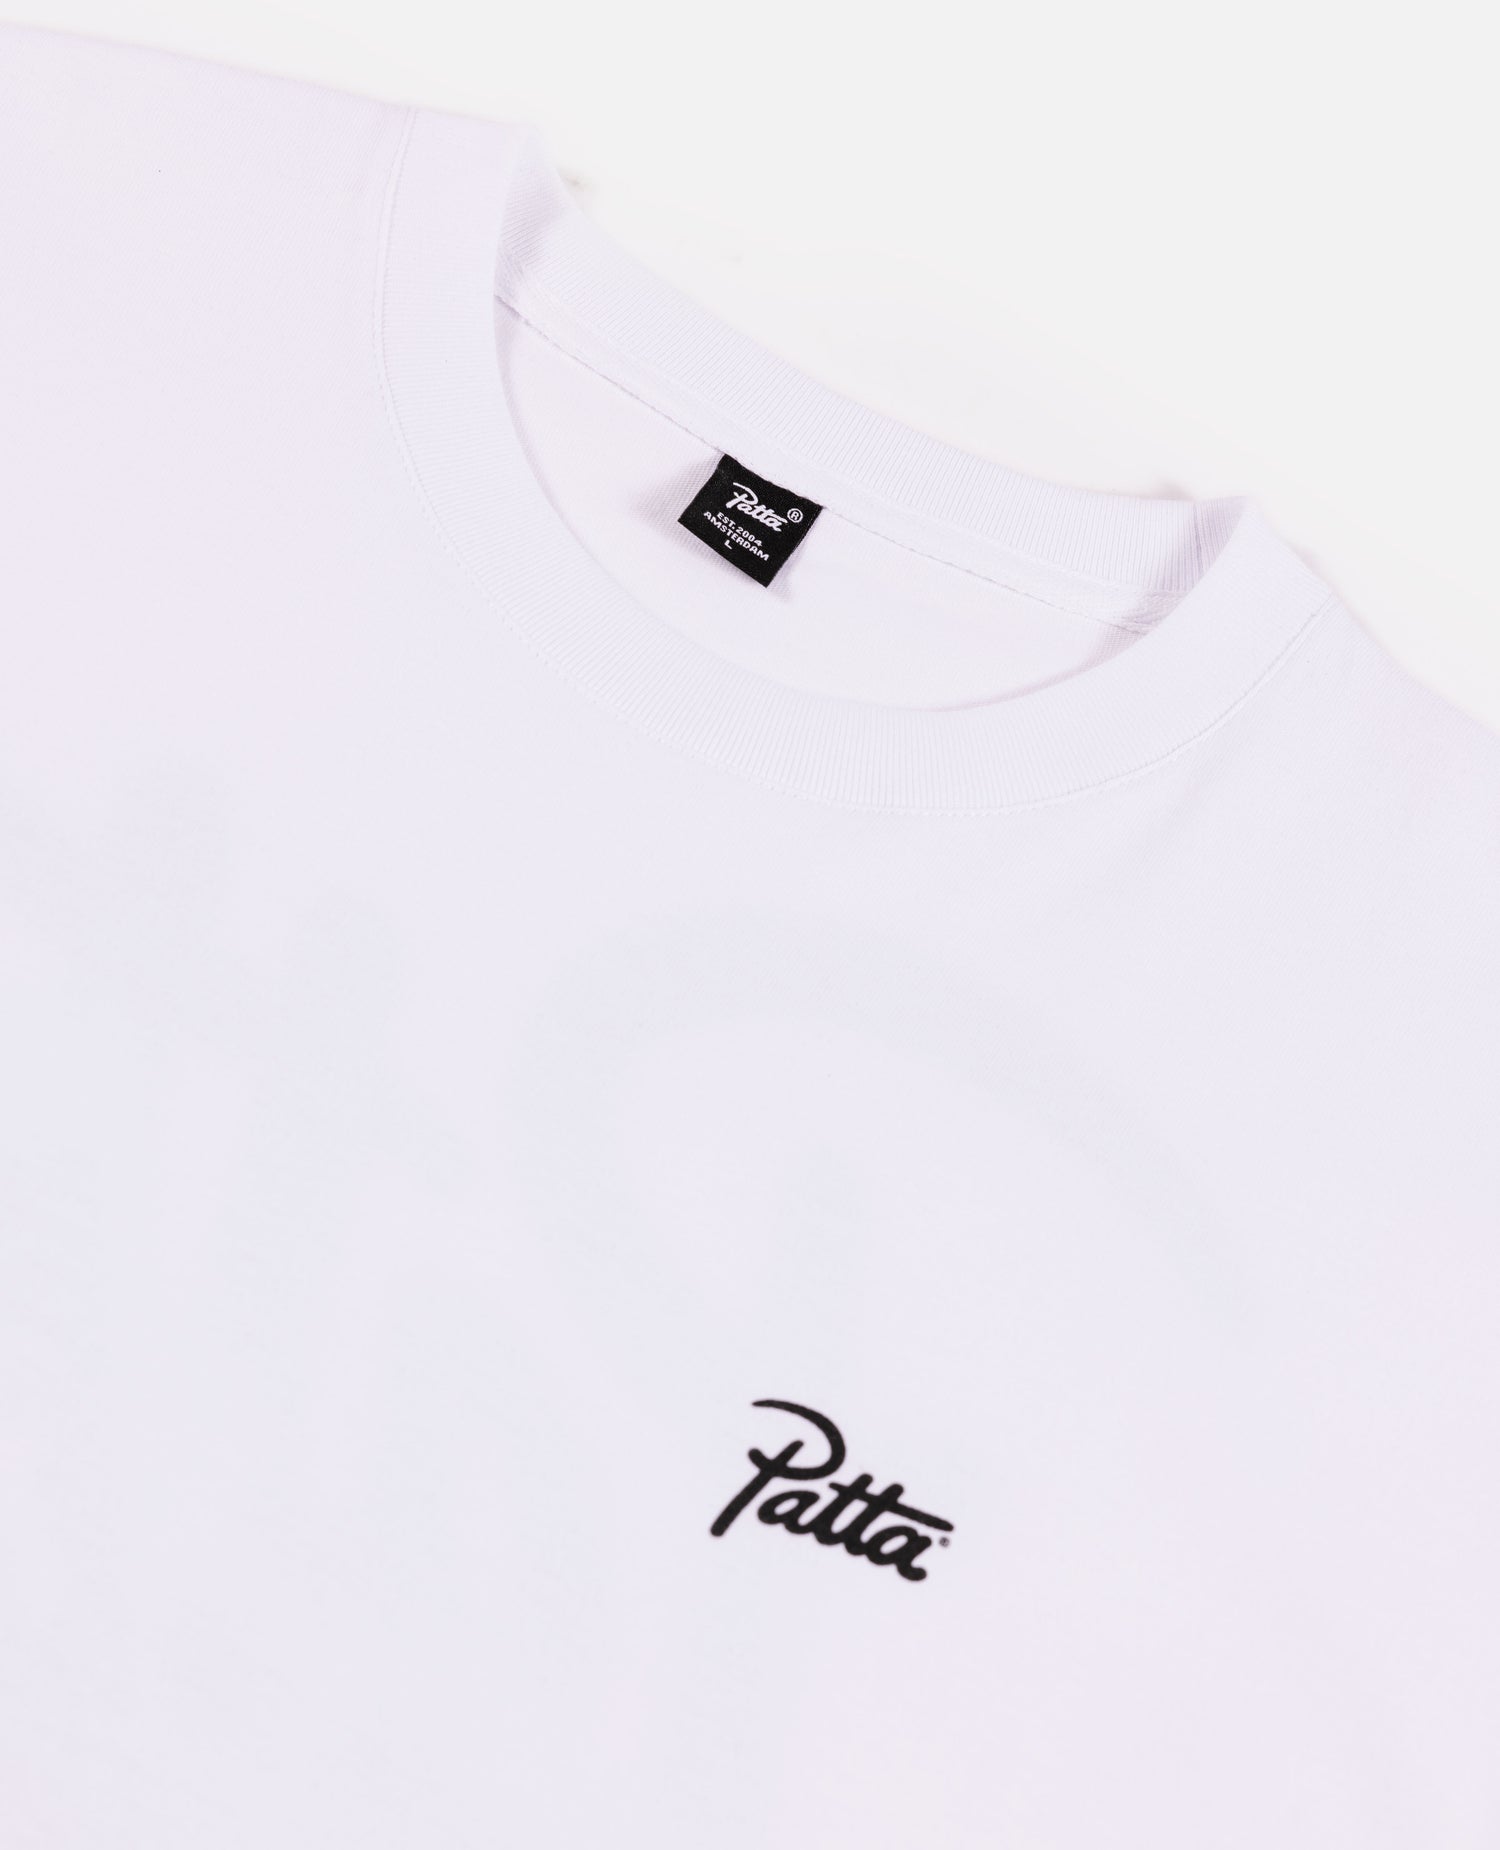 Patta Revolution T-Shirt (White) – Patta UK